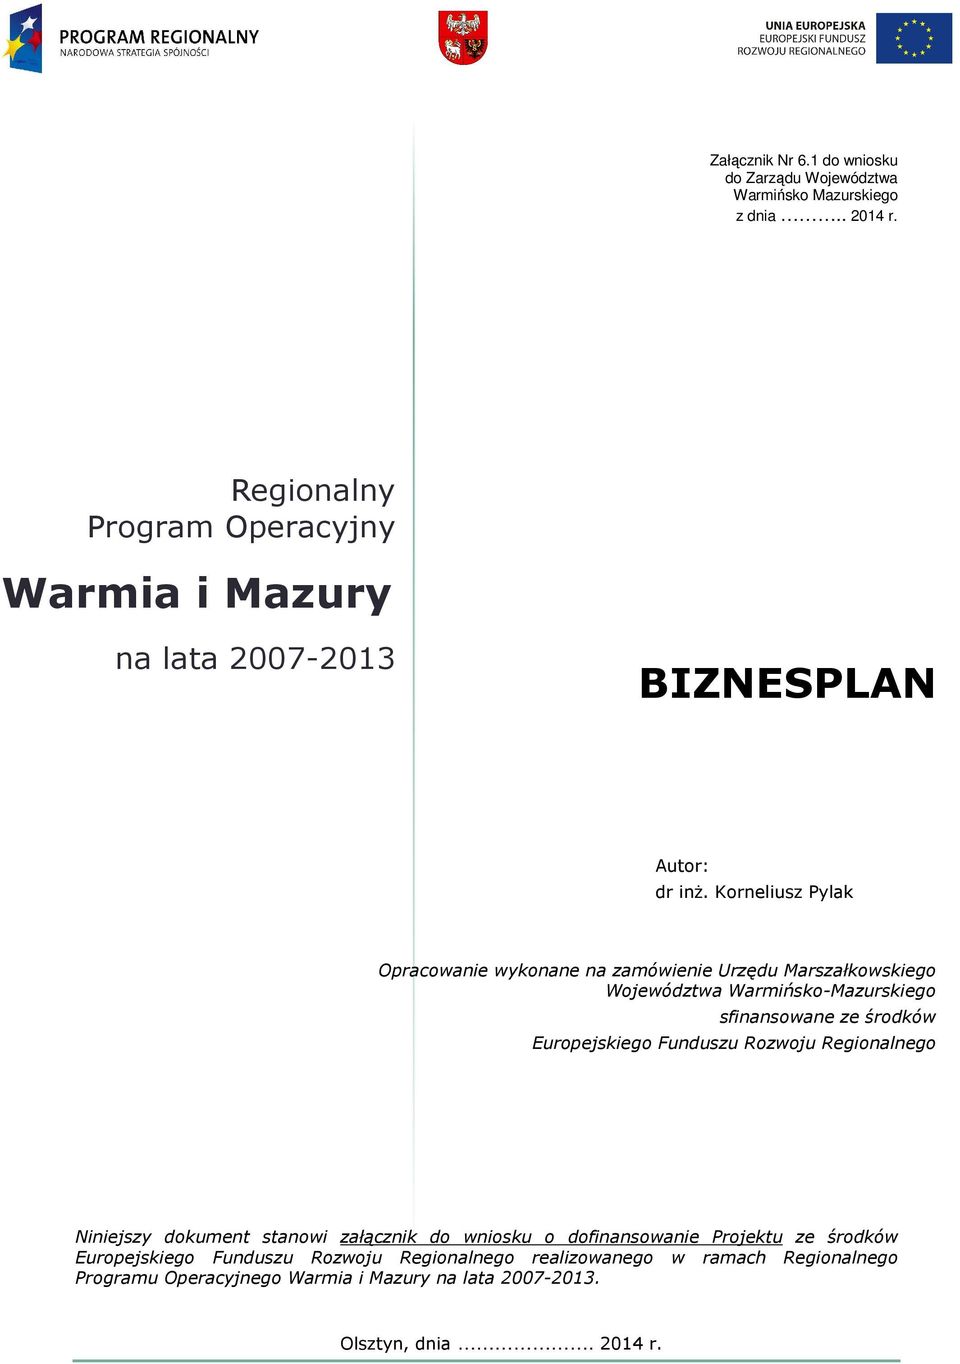 Korneliusz Pylak Opracowanie wykonane na zamówienie Urzędu Marszałkowskiego Województwa Warmińsko-Mazurskiego sfinansowane ze środków Europejskiego